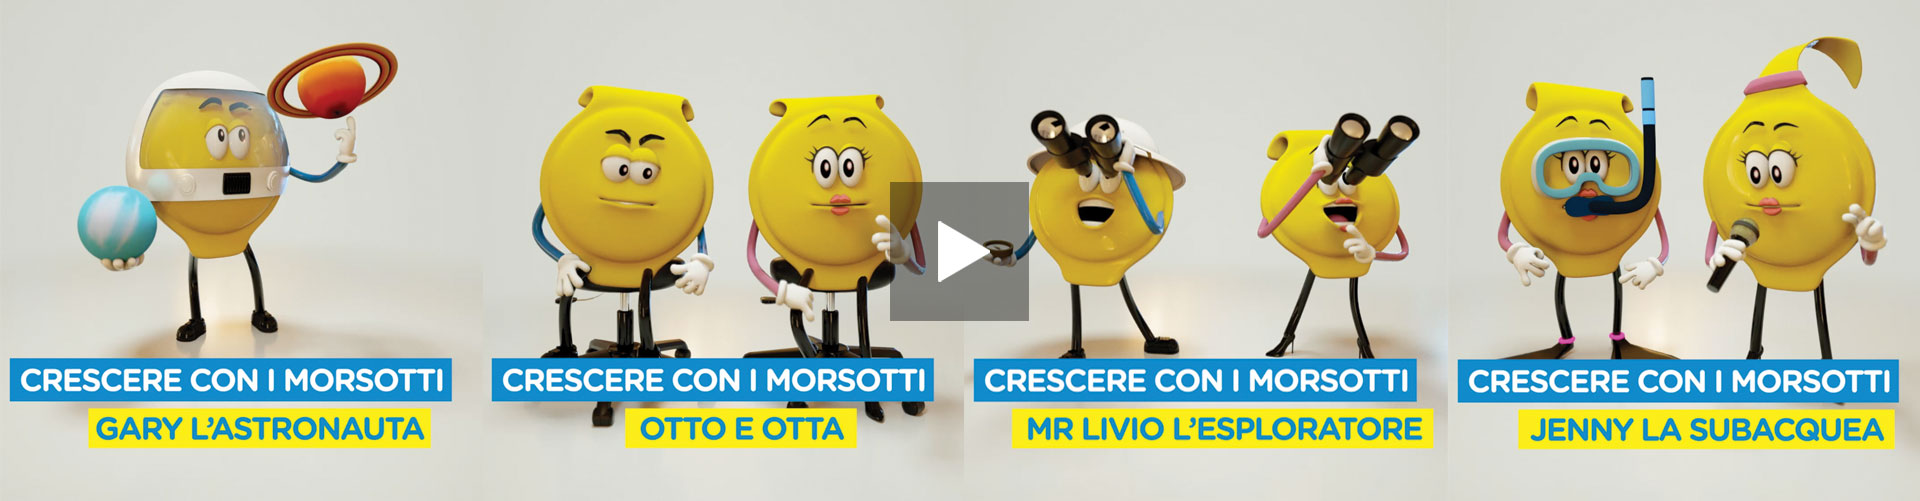 Morsotti Mio - Web Commercial - Nestlé - Motion Graphics